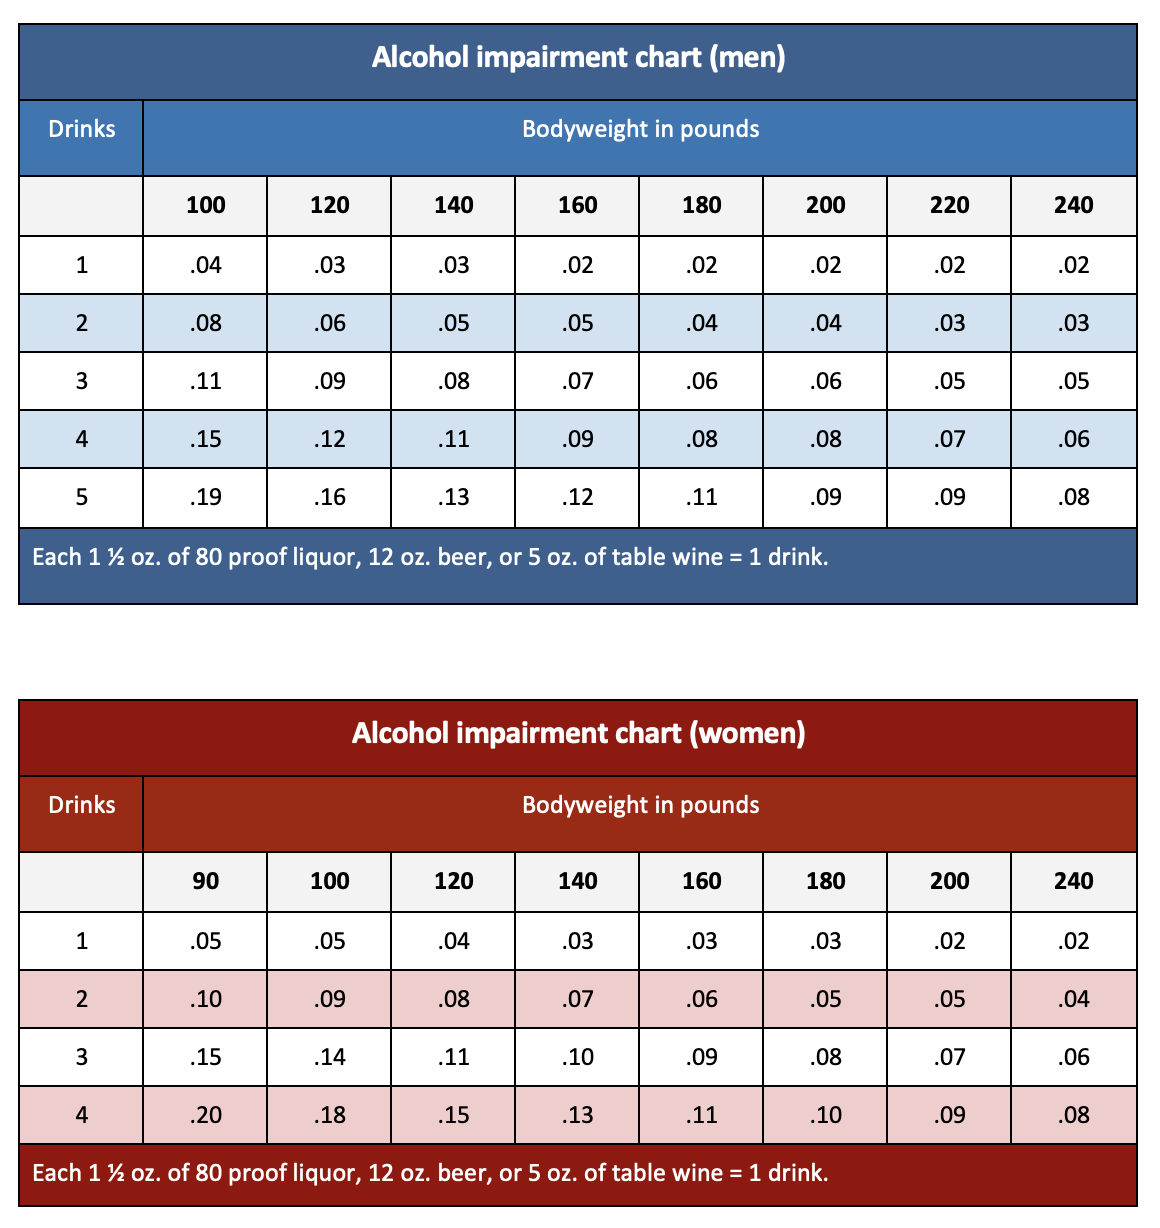 Alcohol impairment chart